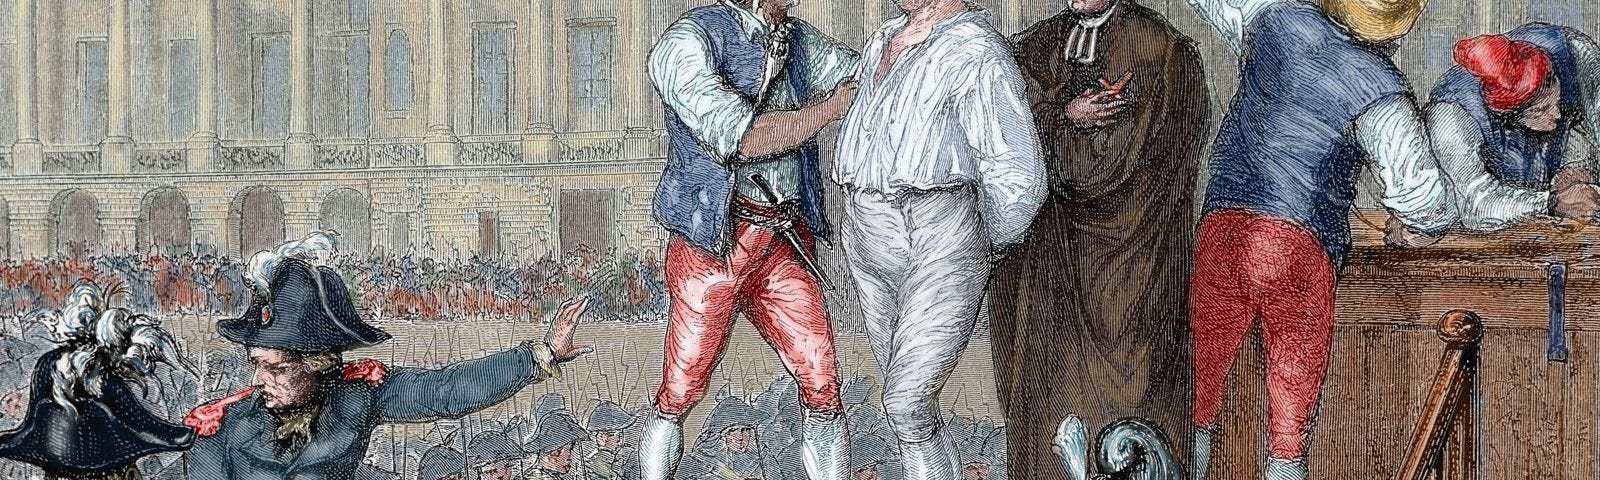 The execution of Louis XVI